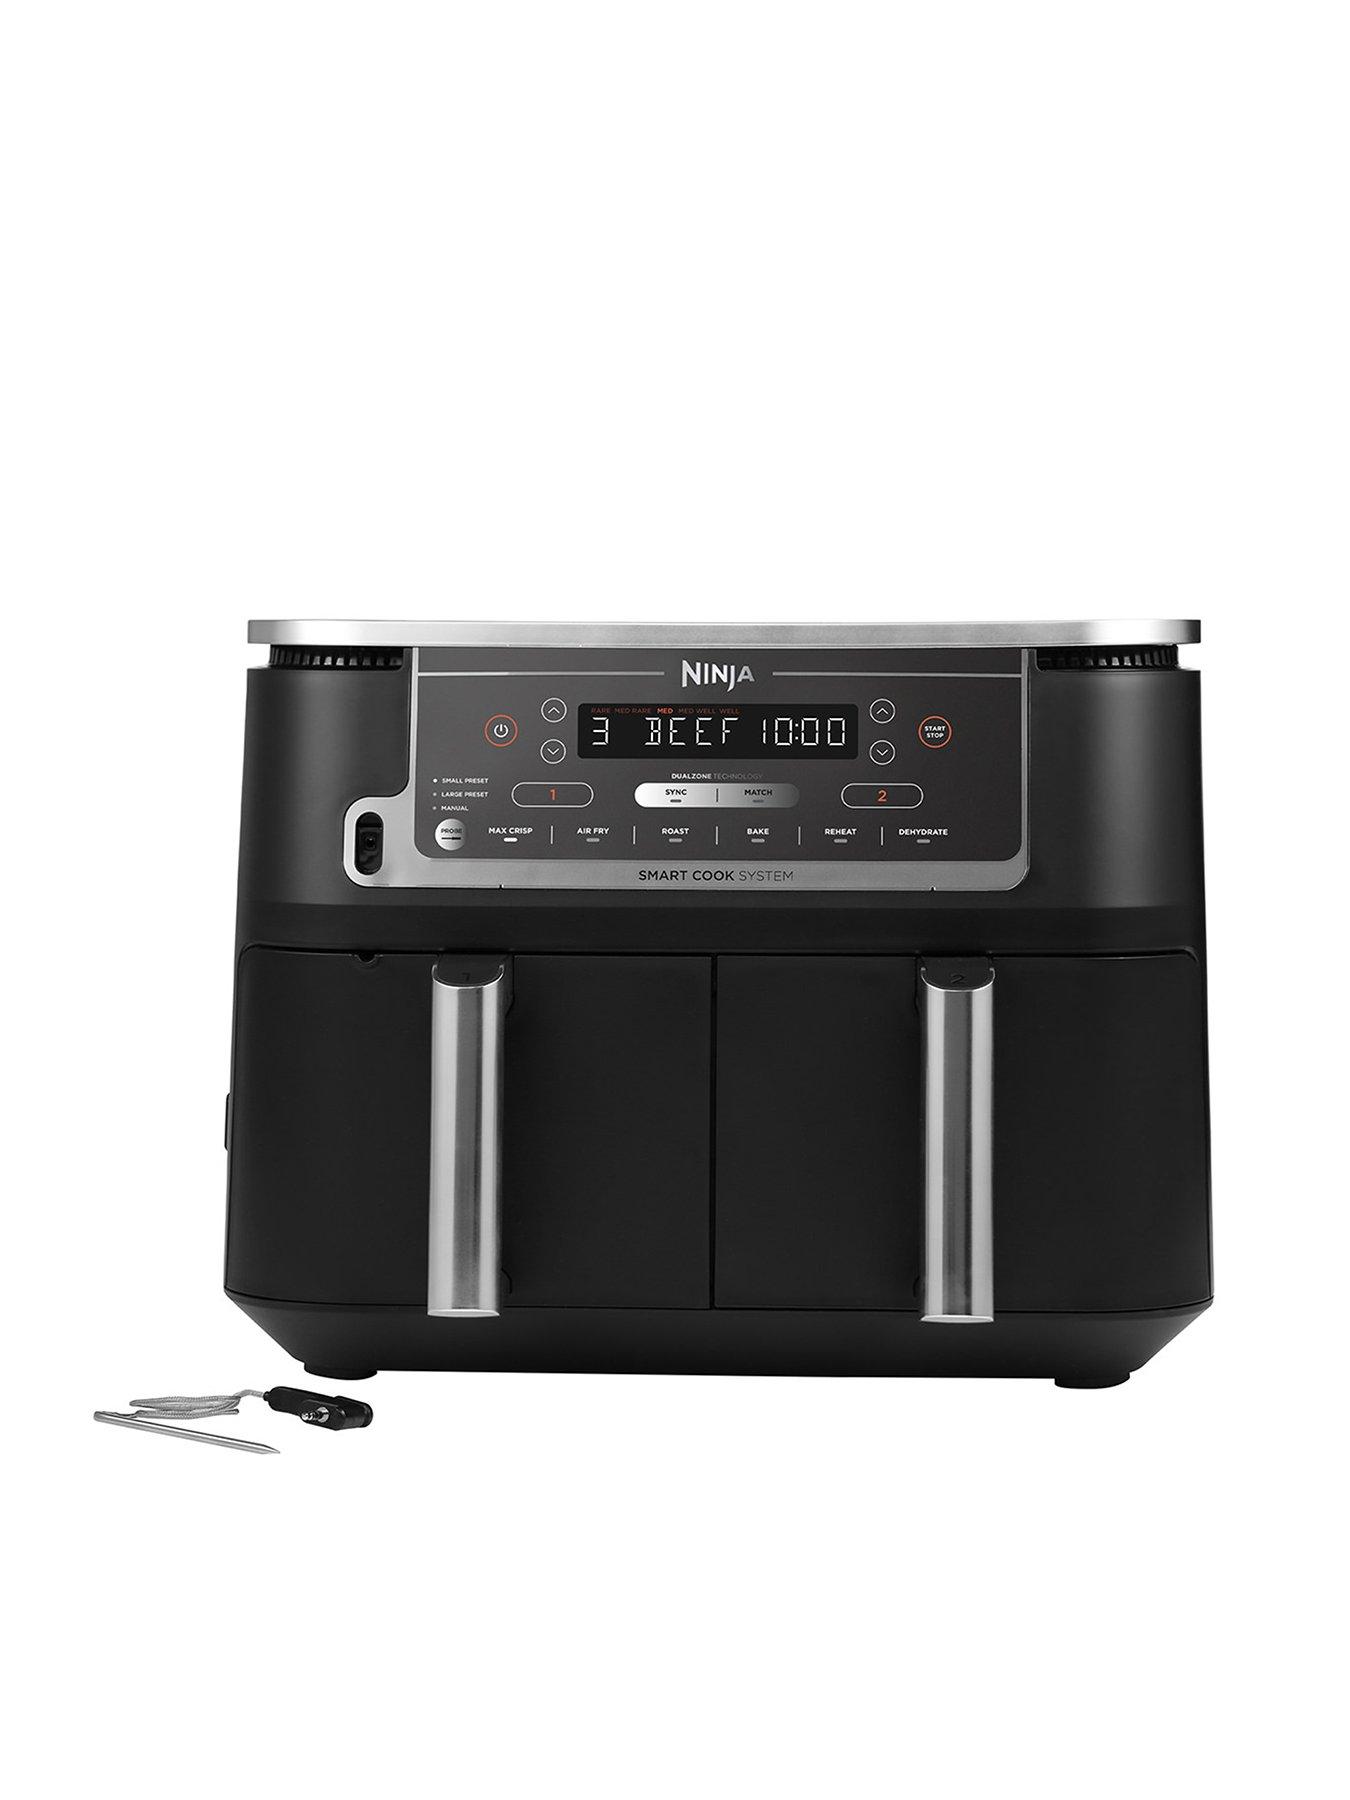 BLACK+DECKER XL Digital Air Fryer, 1700W & 7.5L Capacity, 7